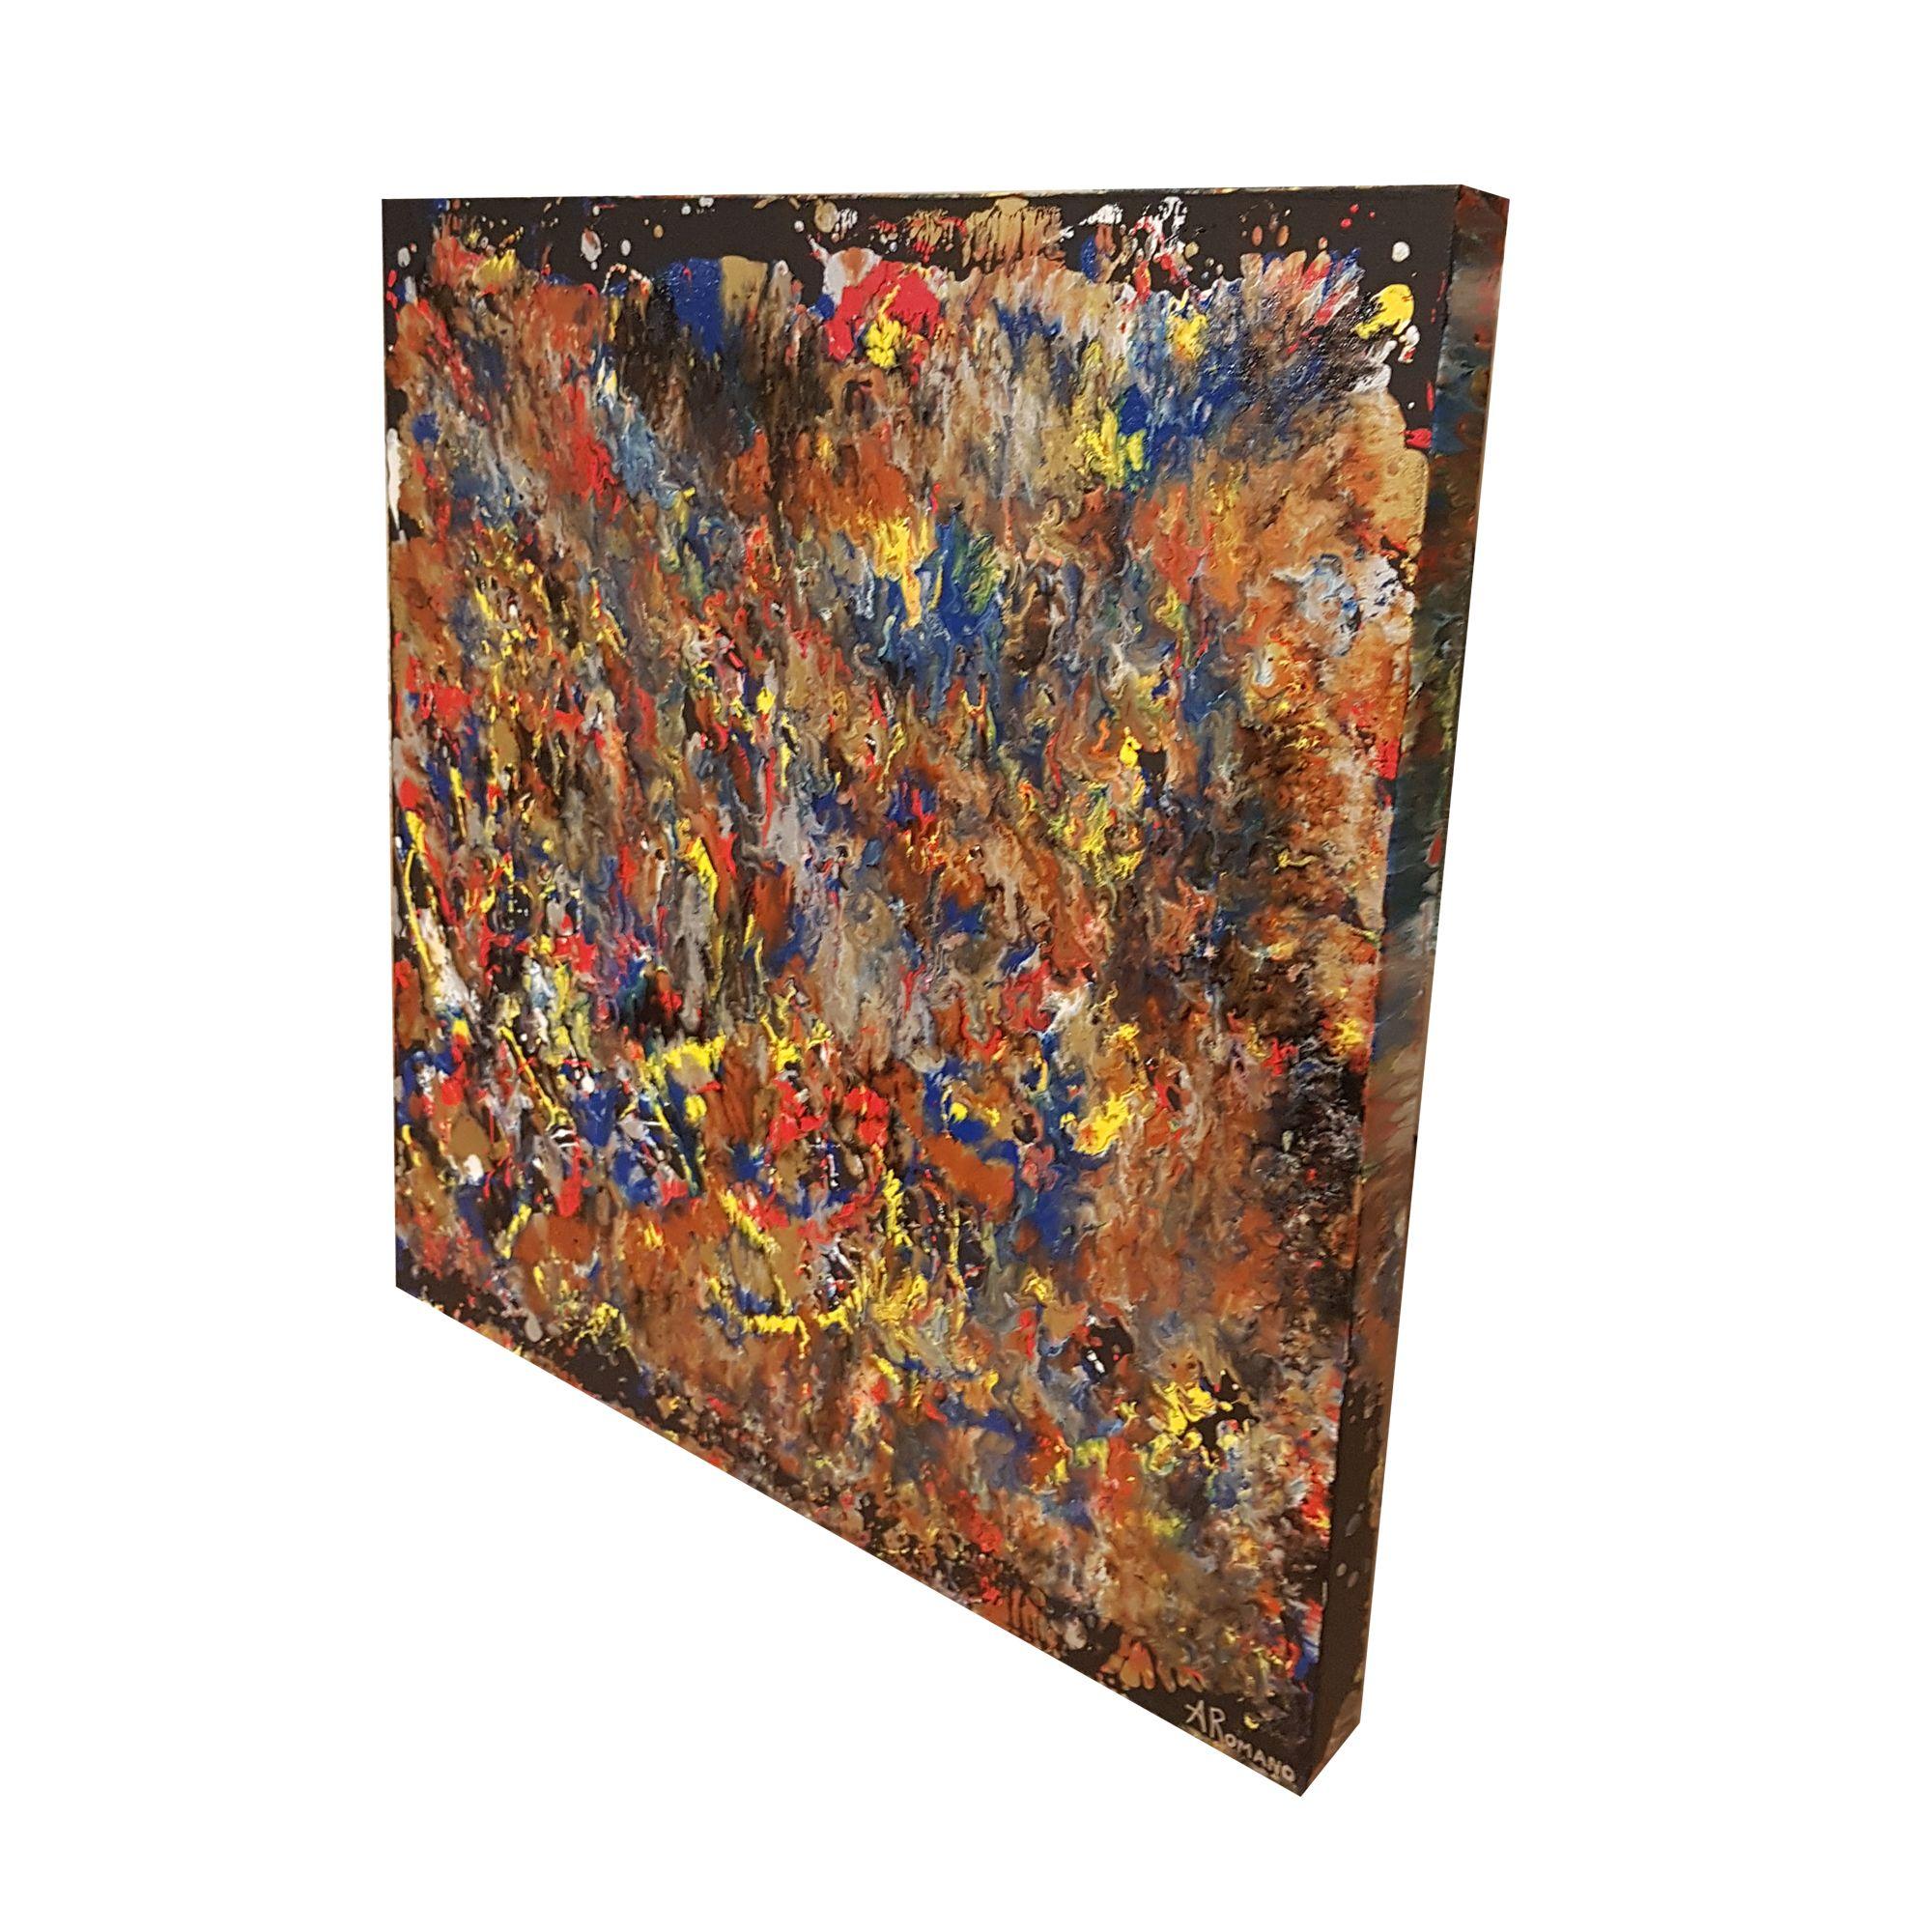 Metallic Flames ist ein originelles abstraktes Mixed-Media-Gemälde mit leuchtenden Primärfarben, fließenden Bewegungen, einzigartigen Texturen und metallischem Kupfer, Bronze, Messing und Gold auf schwarzem Hintergrund.      Hochglanz-Emaille und